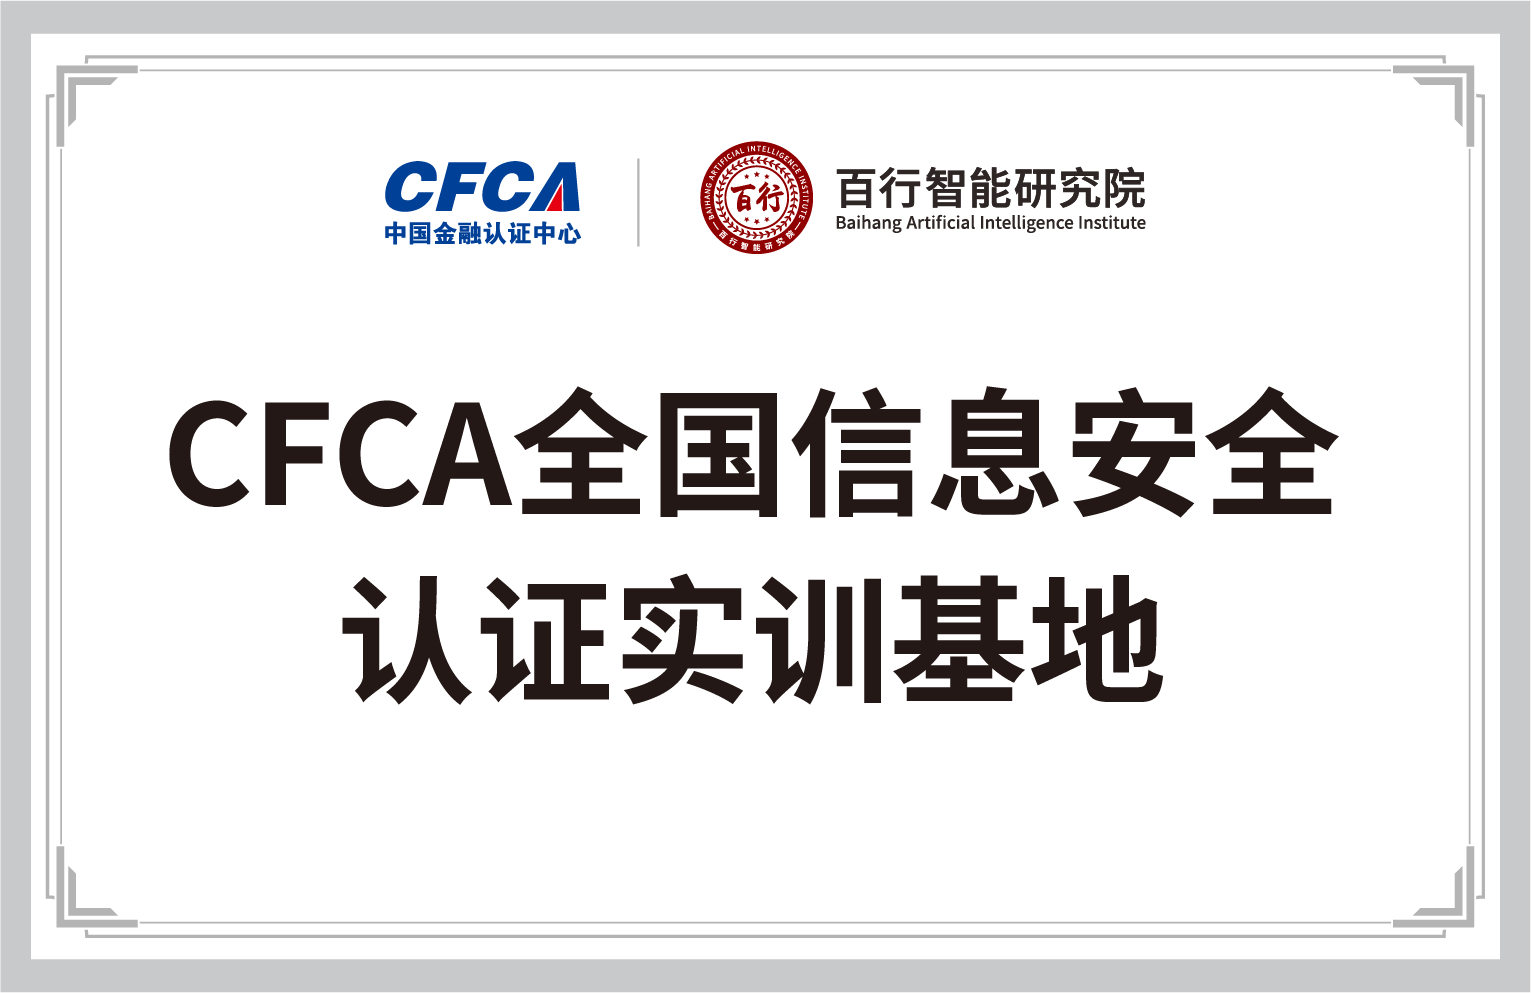 中国金融认证中心-百行智能研究院-CFCA全国信息安全认证实训基地